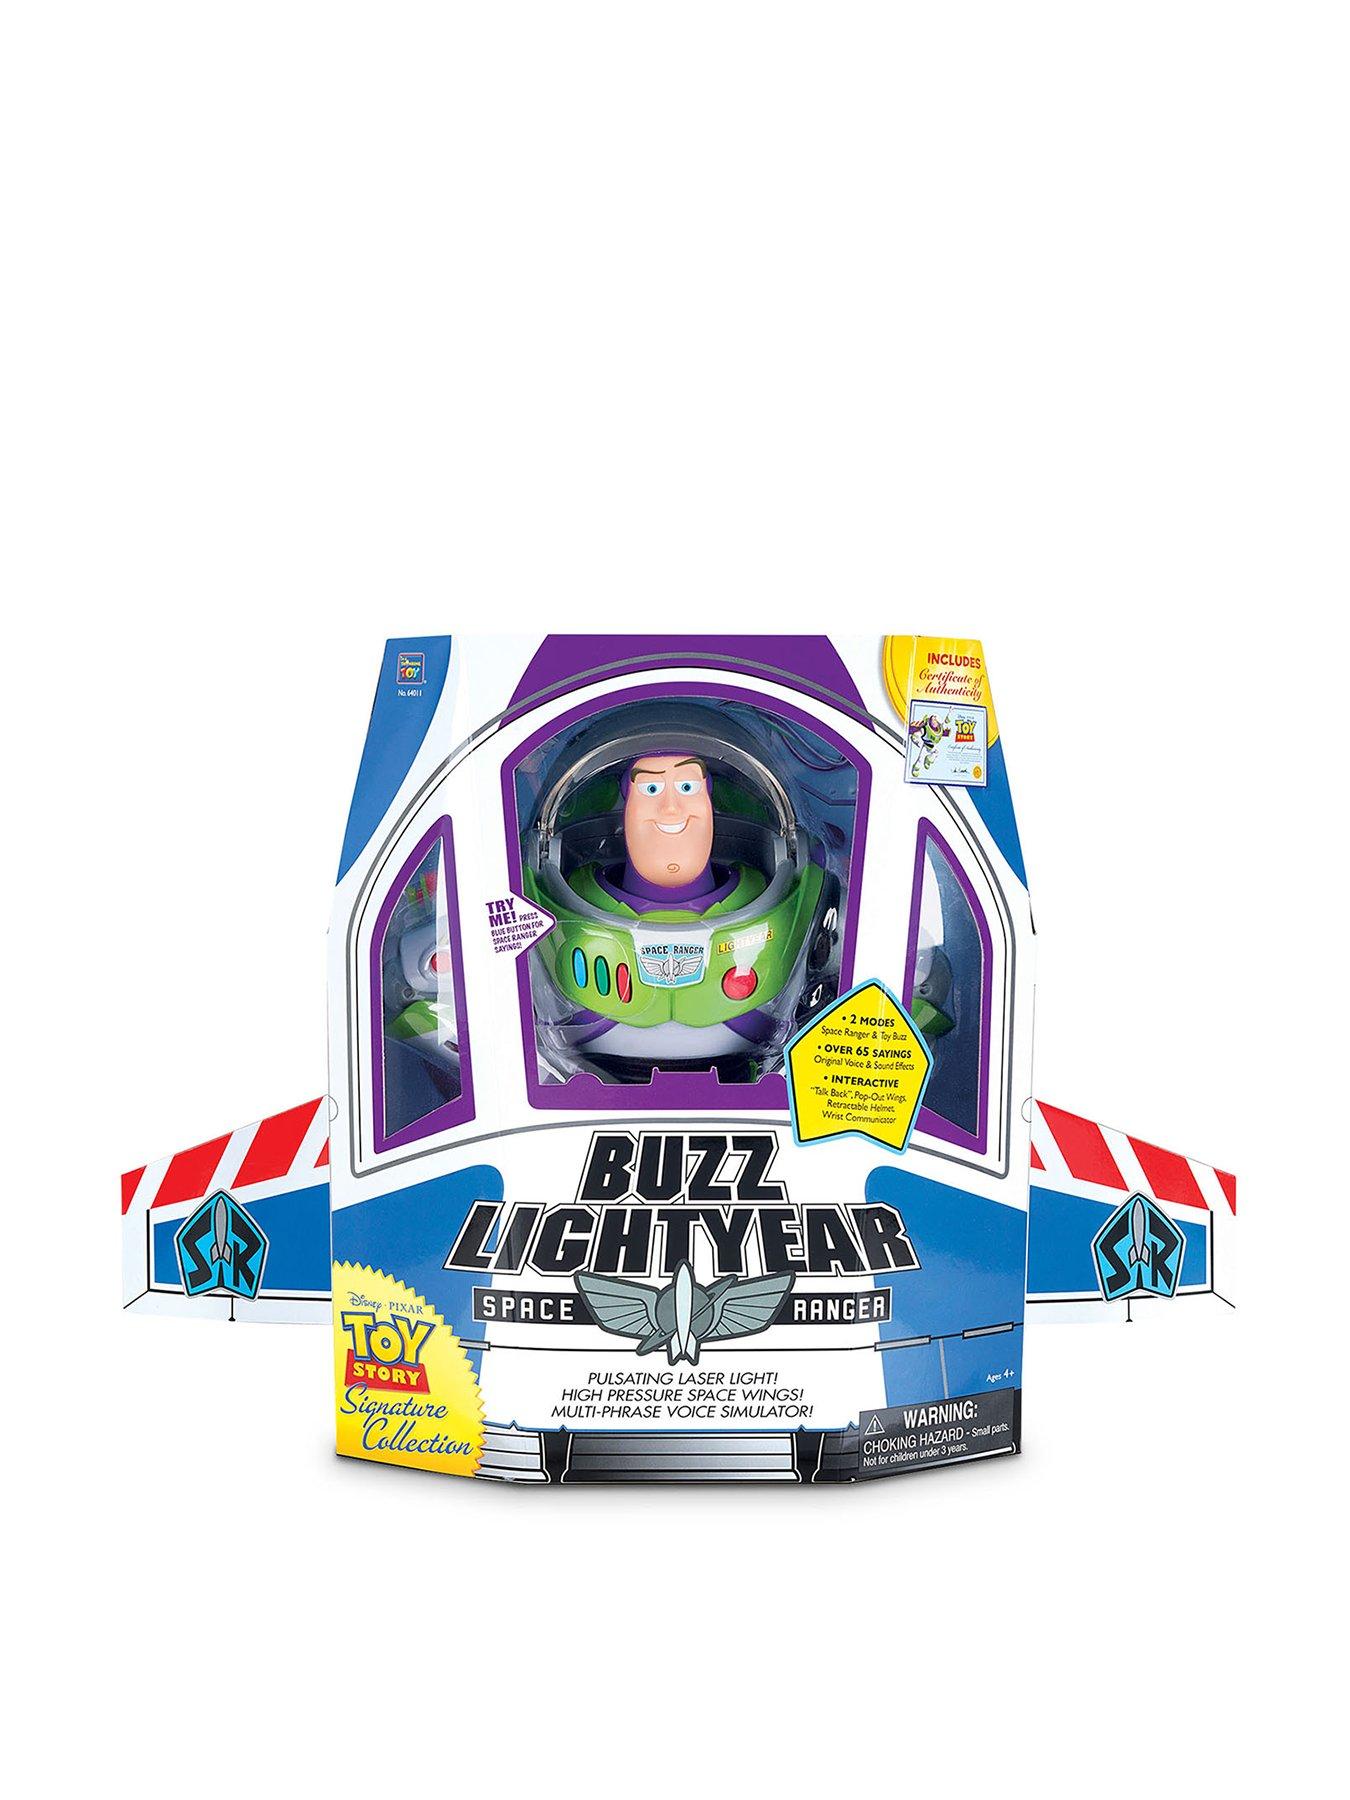 buzz lightyear space ranger movie